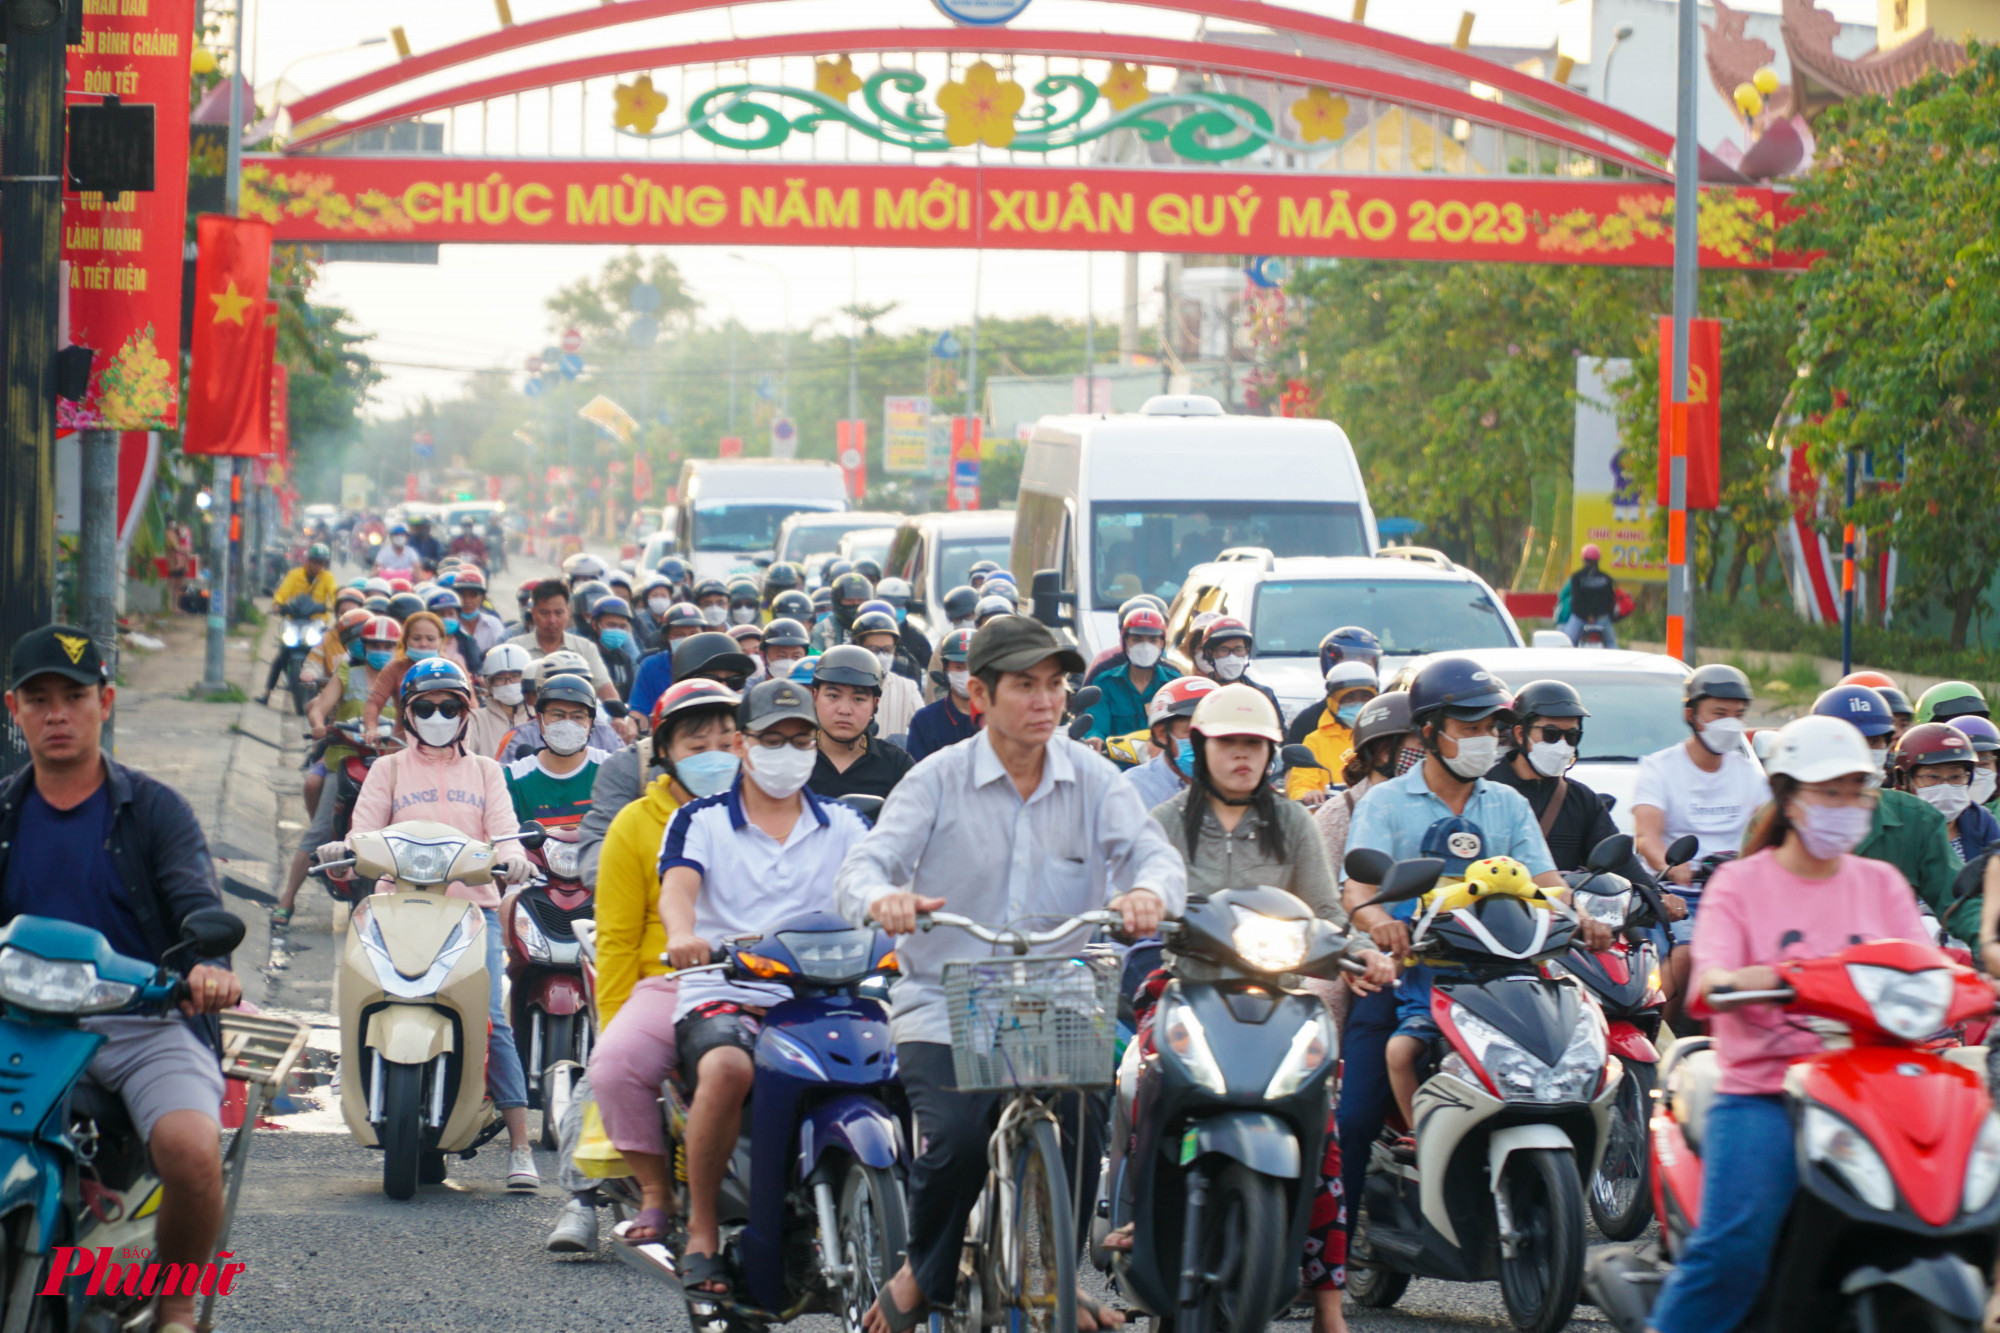 Đường Nguyễn Hữu Trí di chuyển chậm tại nút giao, còn xuyên suốt tuyến đường sẽ thông thoáng